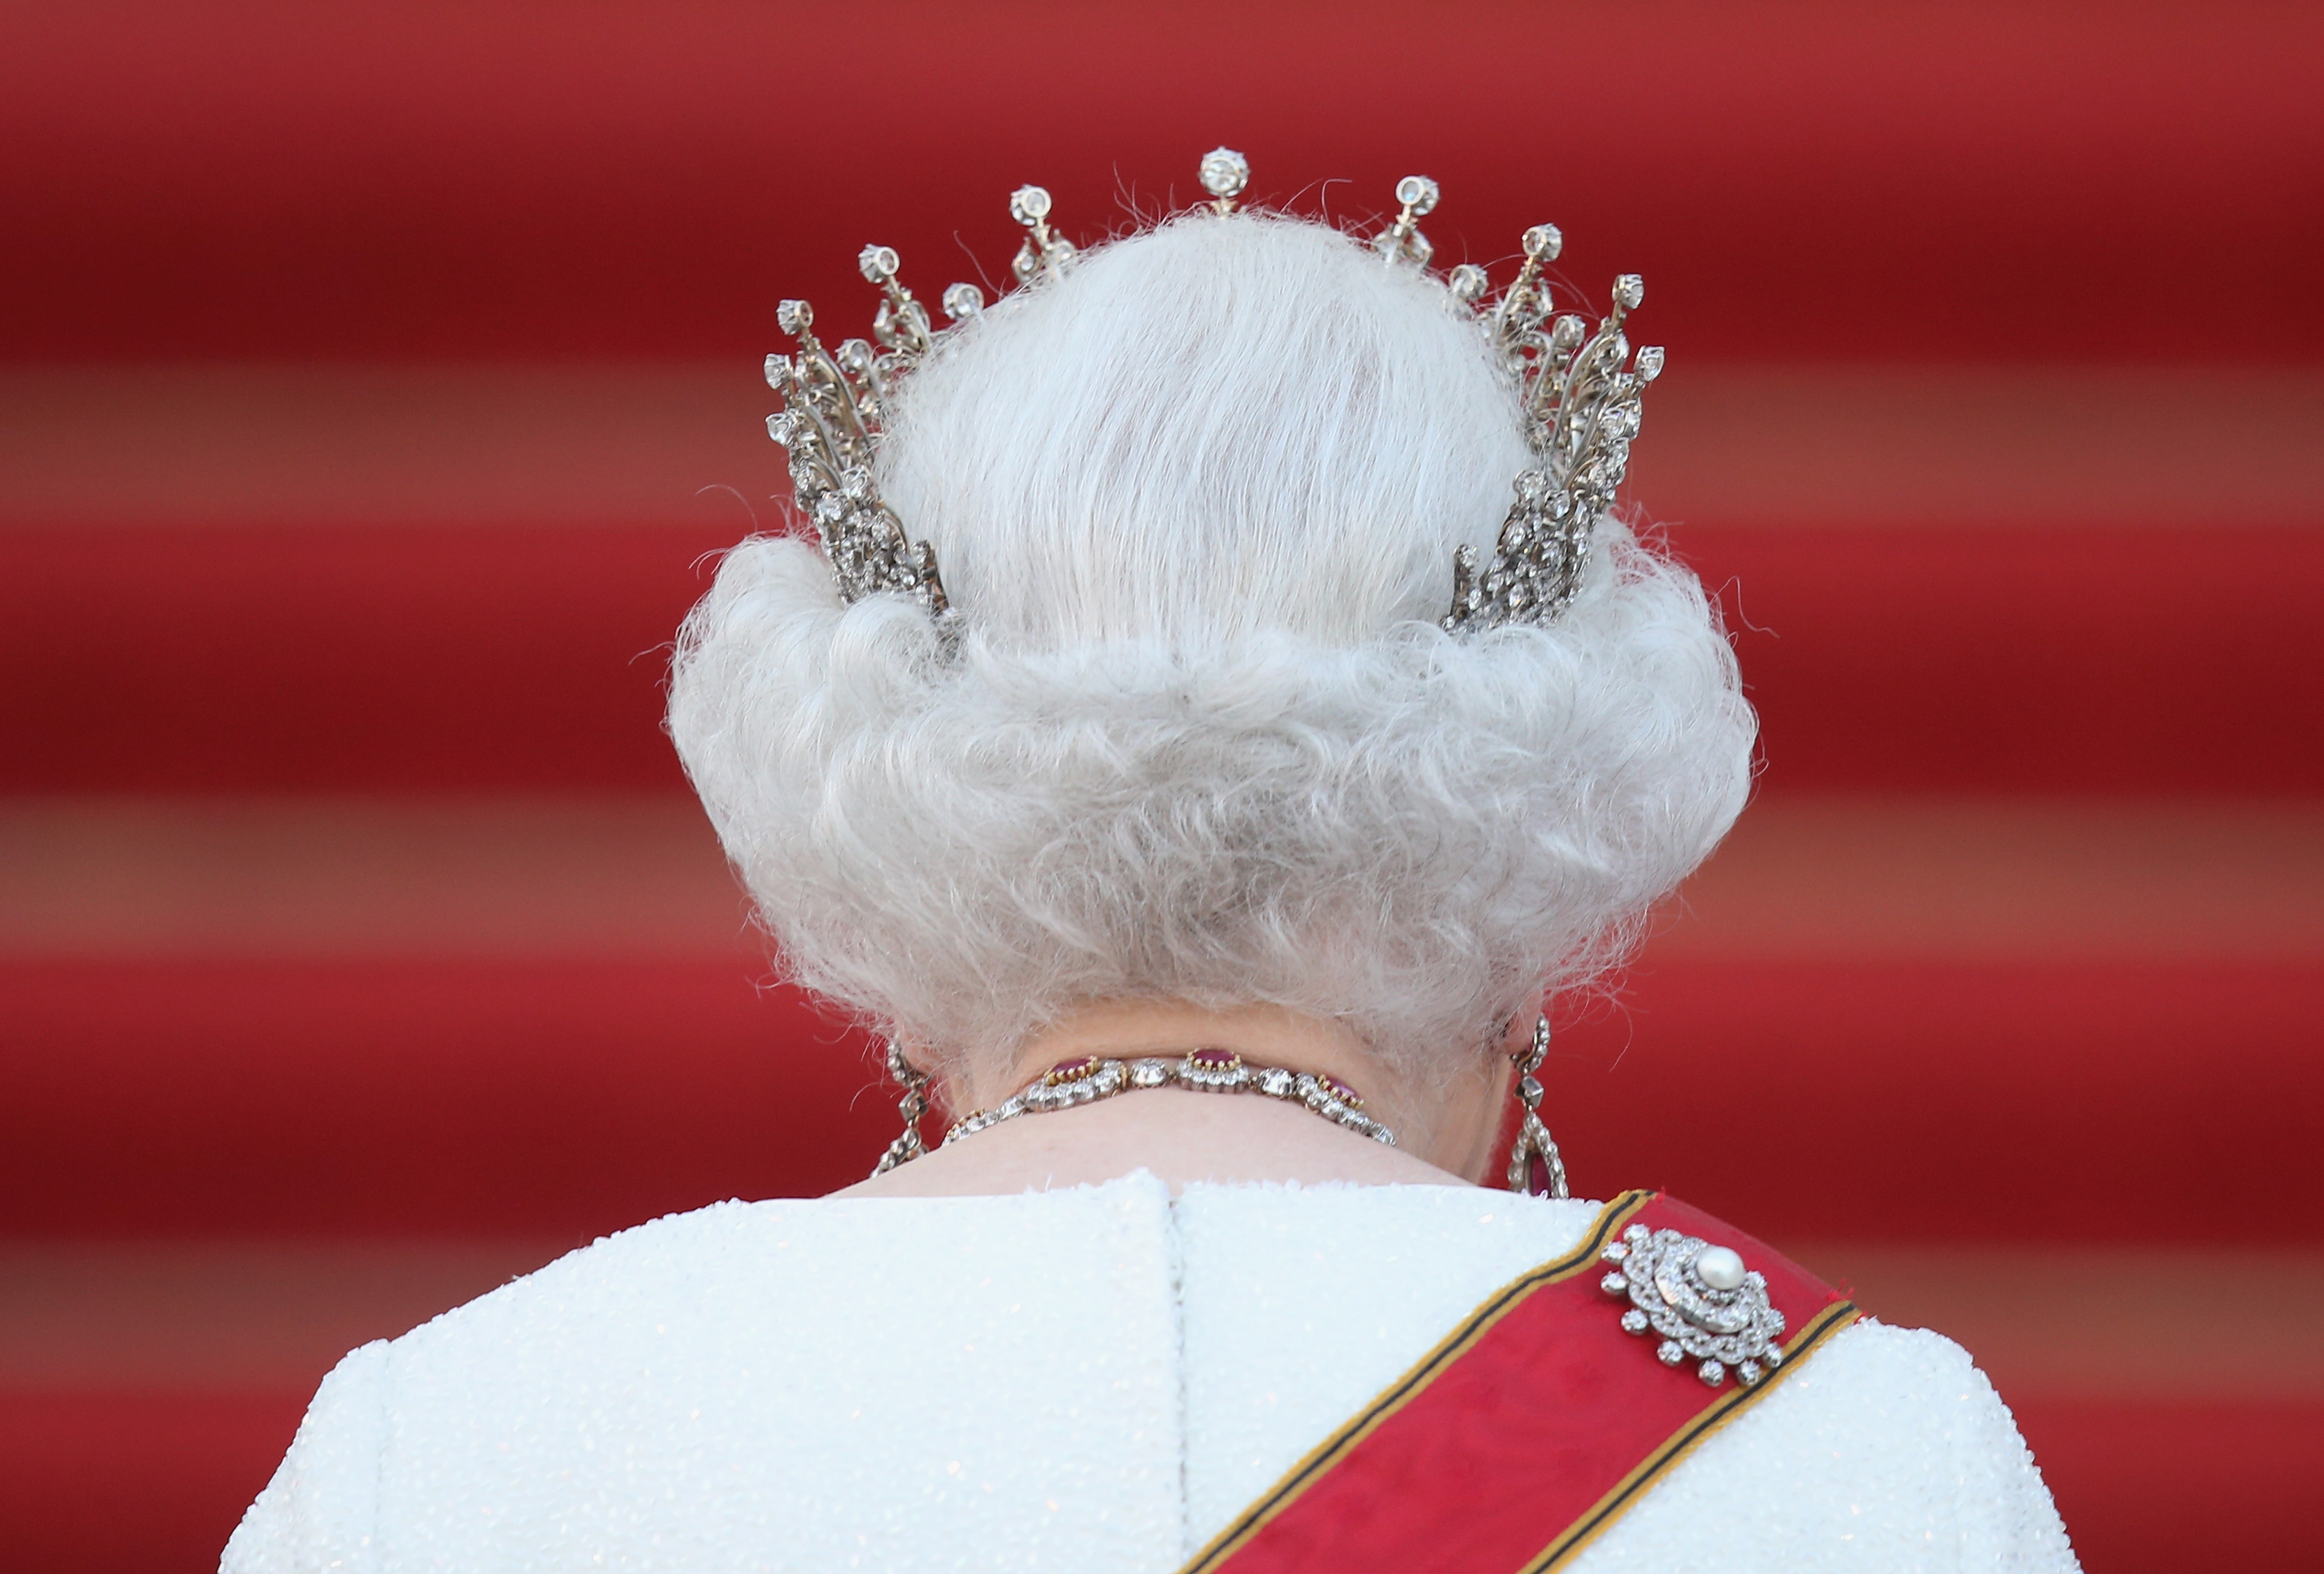 <p><strong>Тиарата на кралица Елизабет II се чупи</strong></p>

<p>Само два часа преди сватбата си, диамантената диадема на кралица Елизабет II - нейното &bdquo;нещо назаем&ldquo; - се пречупва наполовина. Въпреки че майката на кралицата я успокоява, че има време преди церемонията и може да смени диадемата си, според The Telegraph, бъдещата булка настоява да носи тази, която се е счупила. В резултат, на което кралският бижутер е ескортиран спешно до двореца, за да завери счупените парчета обратно и кризата е предотвратена.<br />
&nbsp;</p>